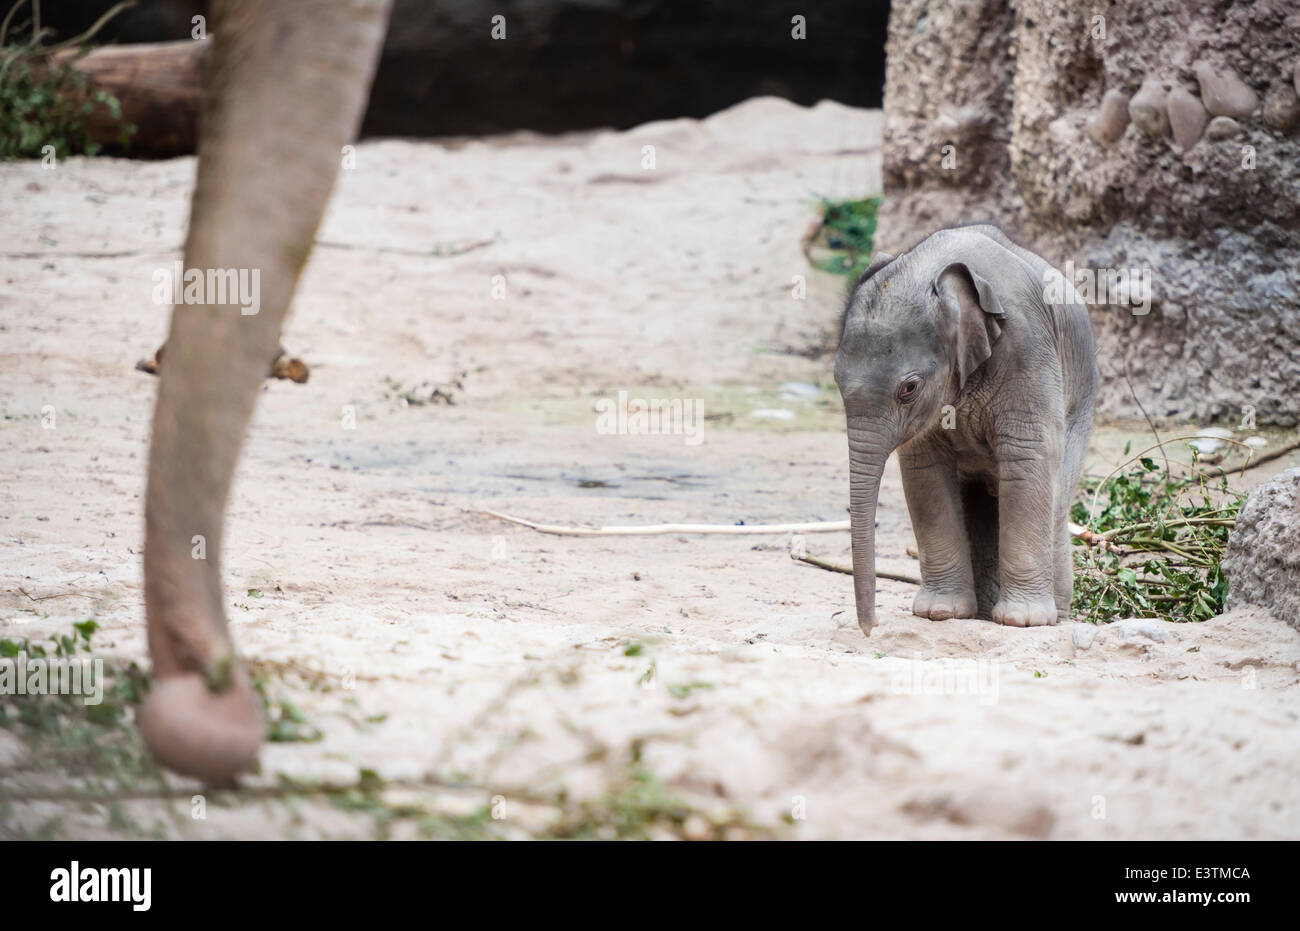 Zürich, Schweiz. 28. Juni 2014. Noch etwas wackelig auf den Beinen, das 11  - Tage alten Elefanten Baby Mädchen, das am 17. Juni 2014, geborene  Exloring ist ihr Zuhause im Zoo Zürich.